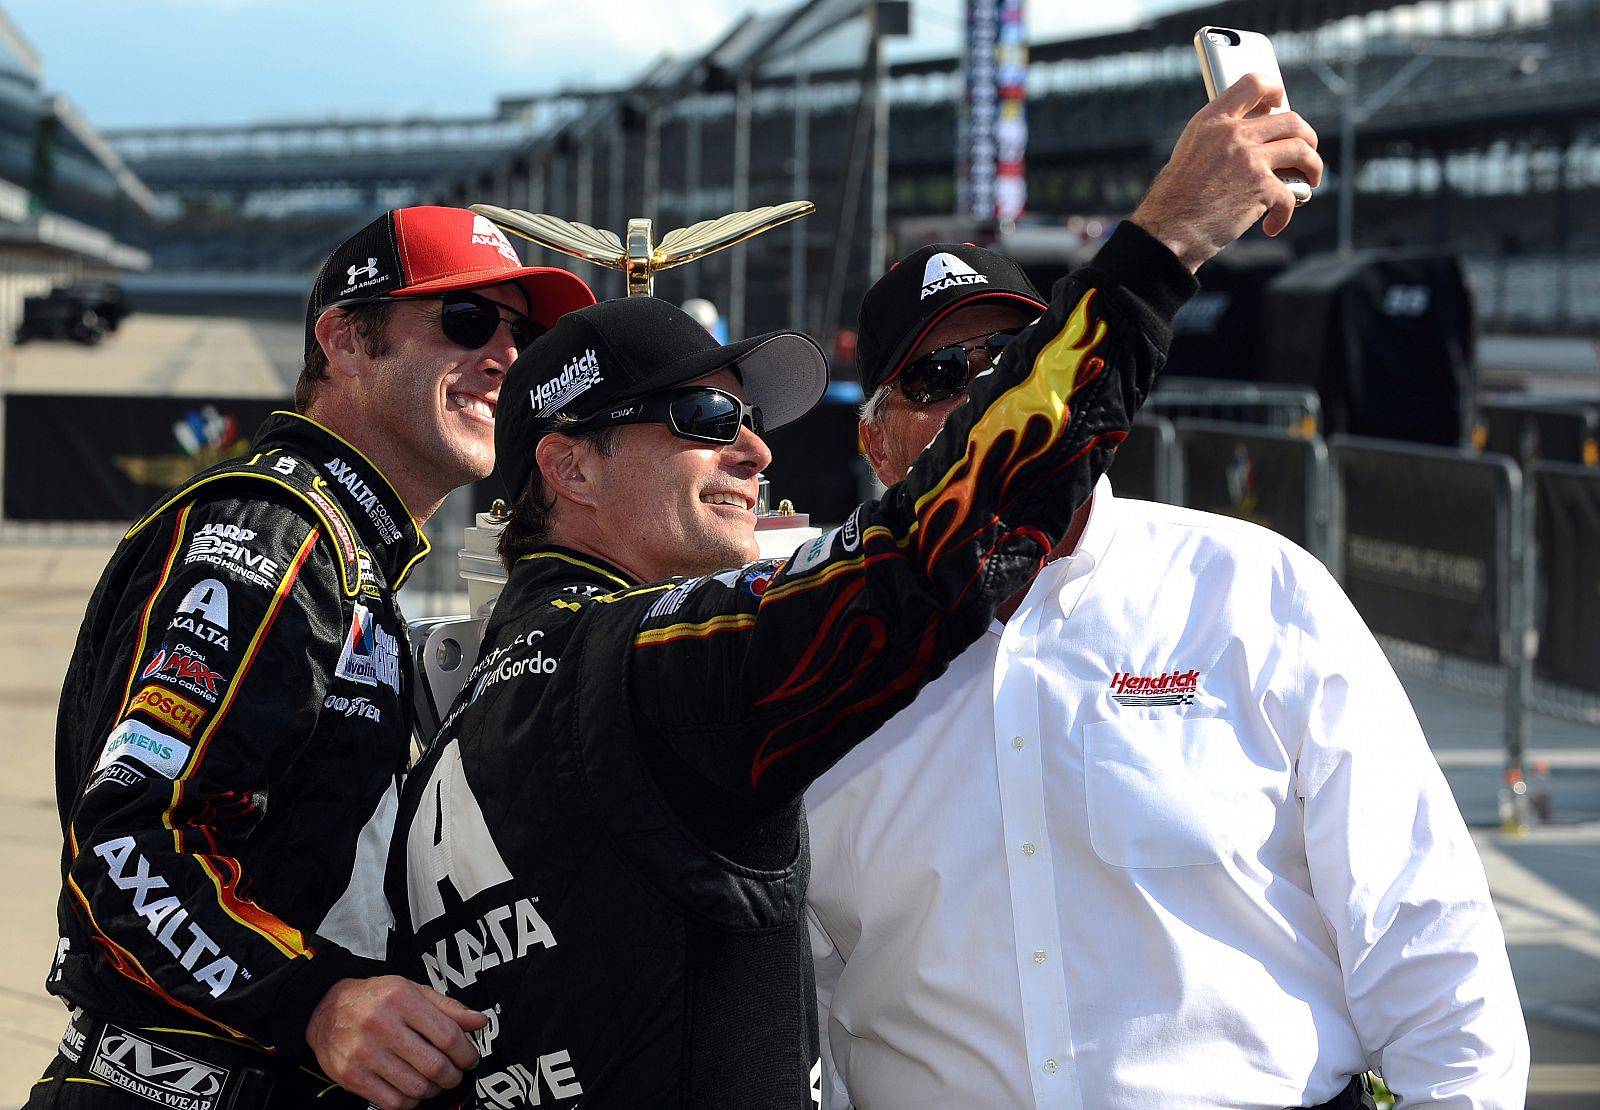 Jeff Gordon, piloto de Nascar, se hace una autofoto con dos compañeros de equipo en Indianapolis.